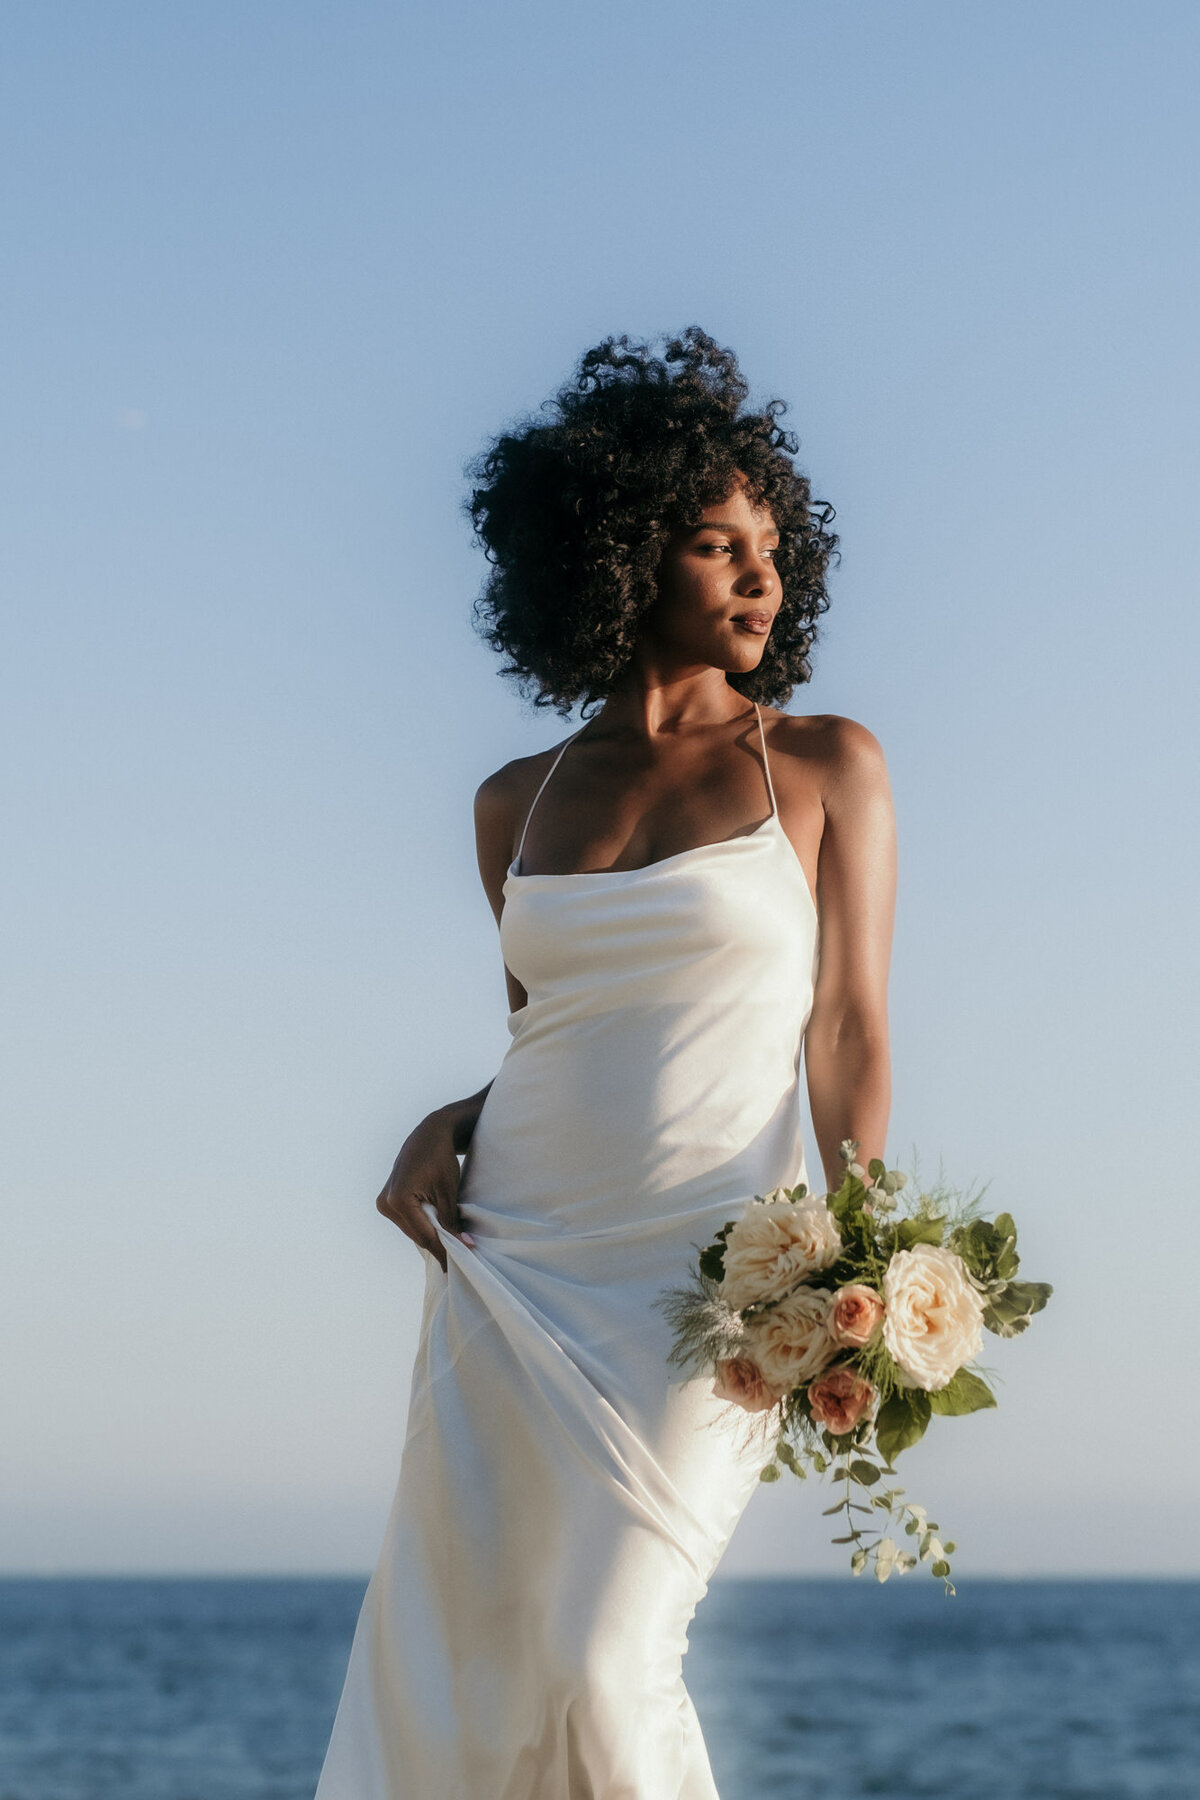 Mit dem Meer im Hintergrund posiert die Braut mit ihrem Strauß in einer Hand.